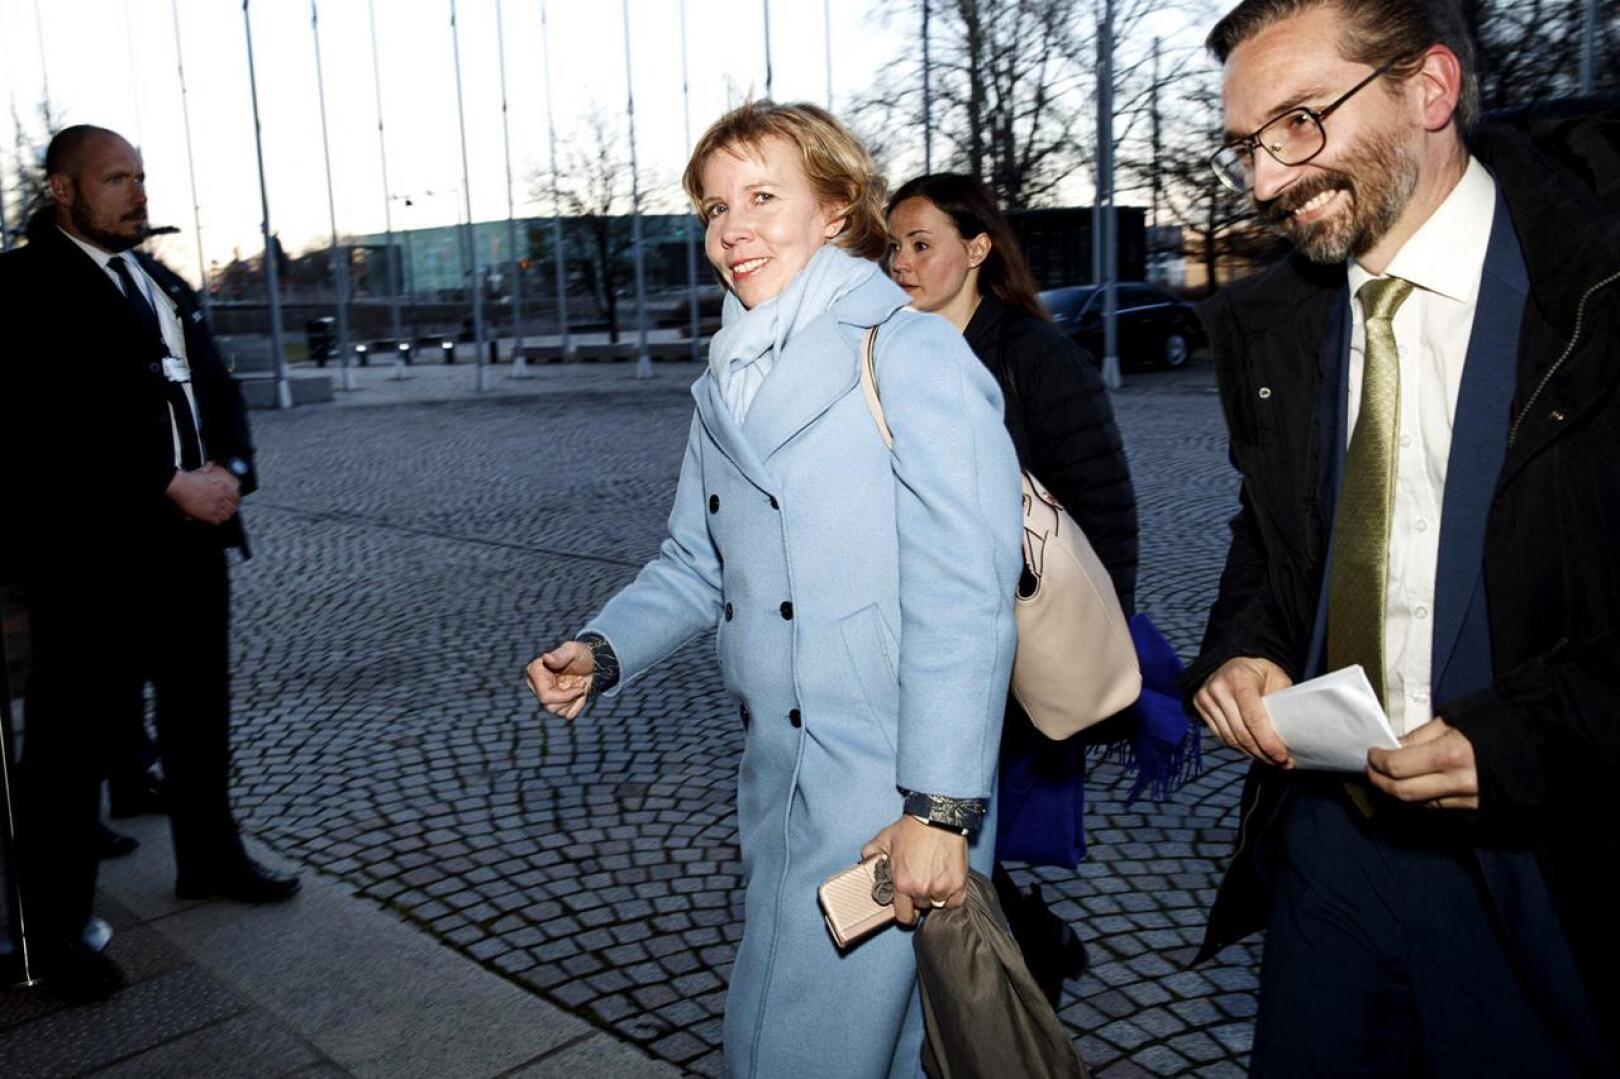 RKP:n puoluejohtaja Anna-Maja Henriksson saapuu median edustajien tentittäväksi vaali-iltana sunnuntaina. Hän johdatti puolueensa Vaasan vaalipiirin suurimmaksi puolueeksi.